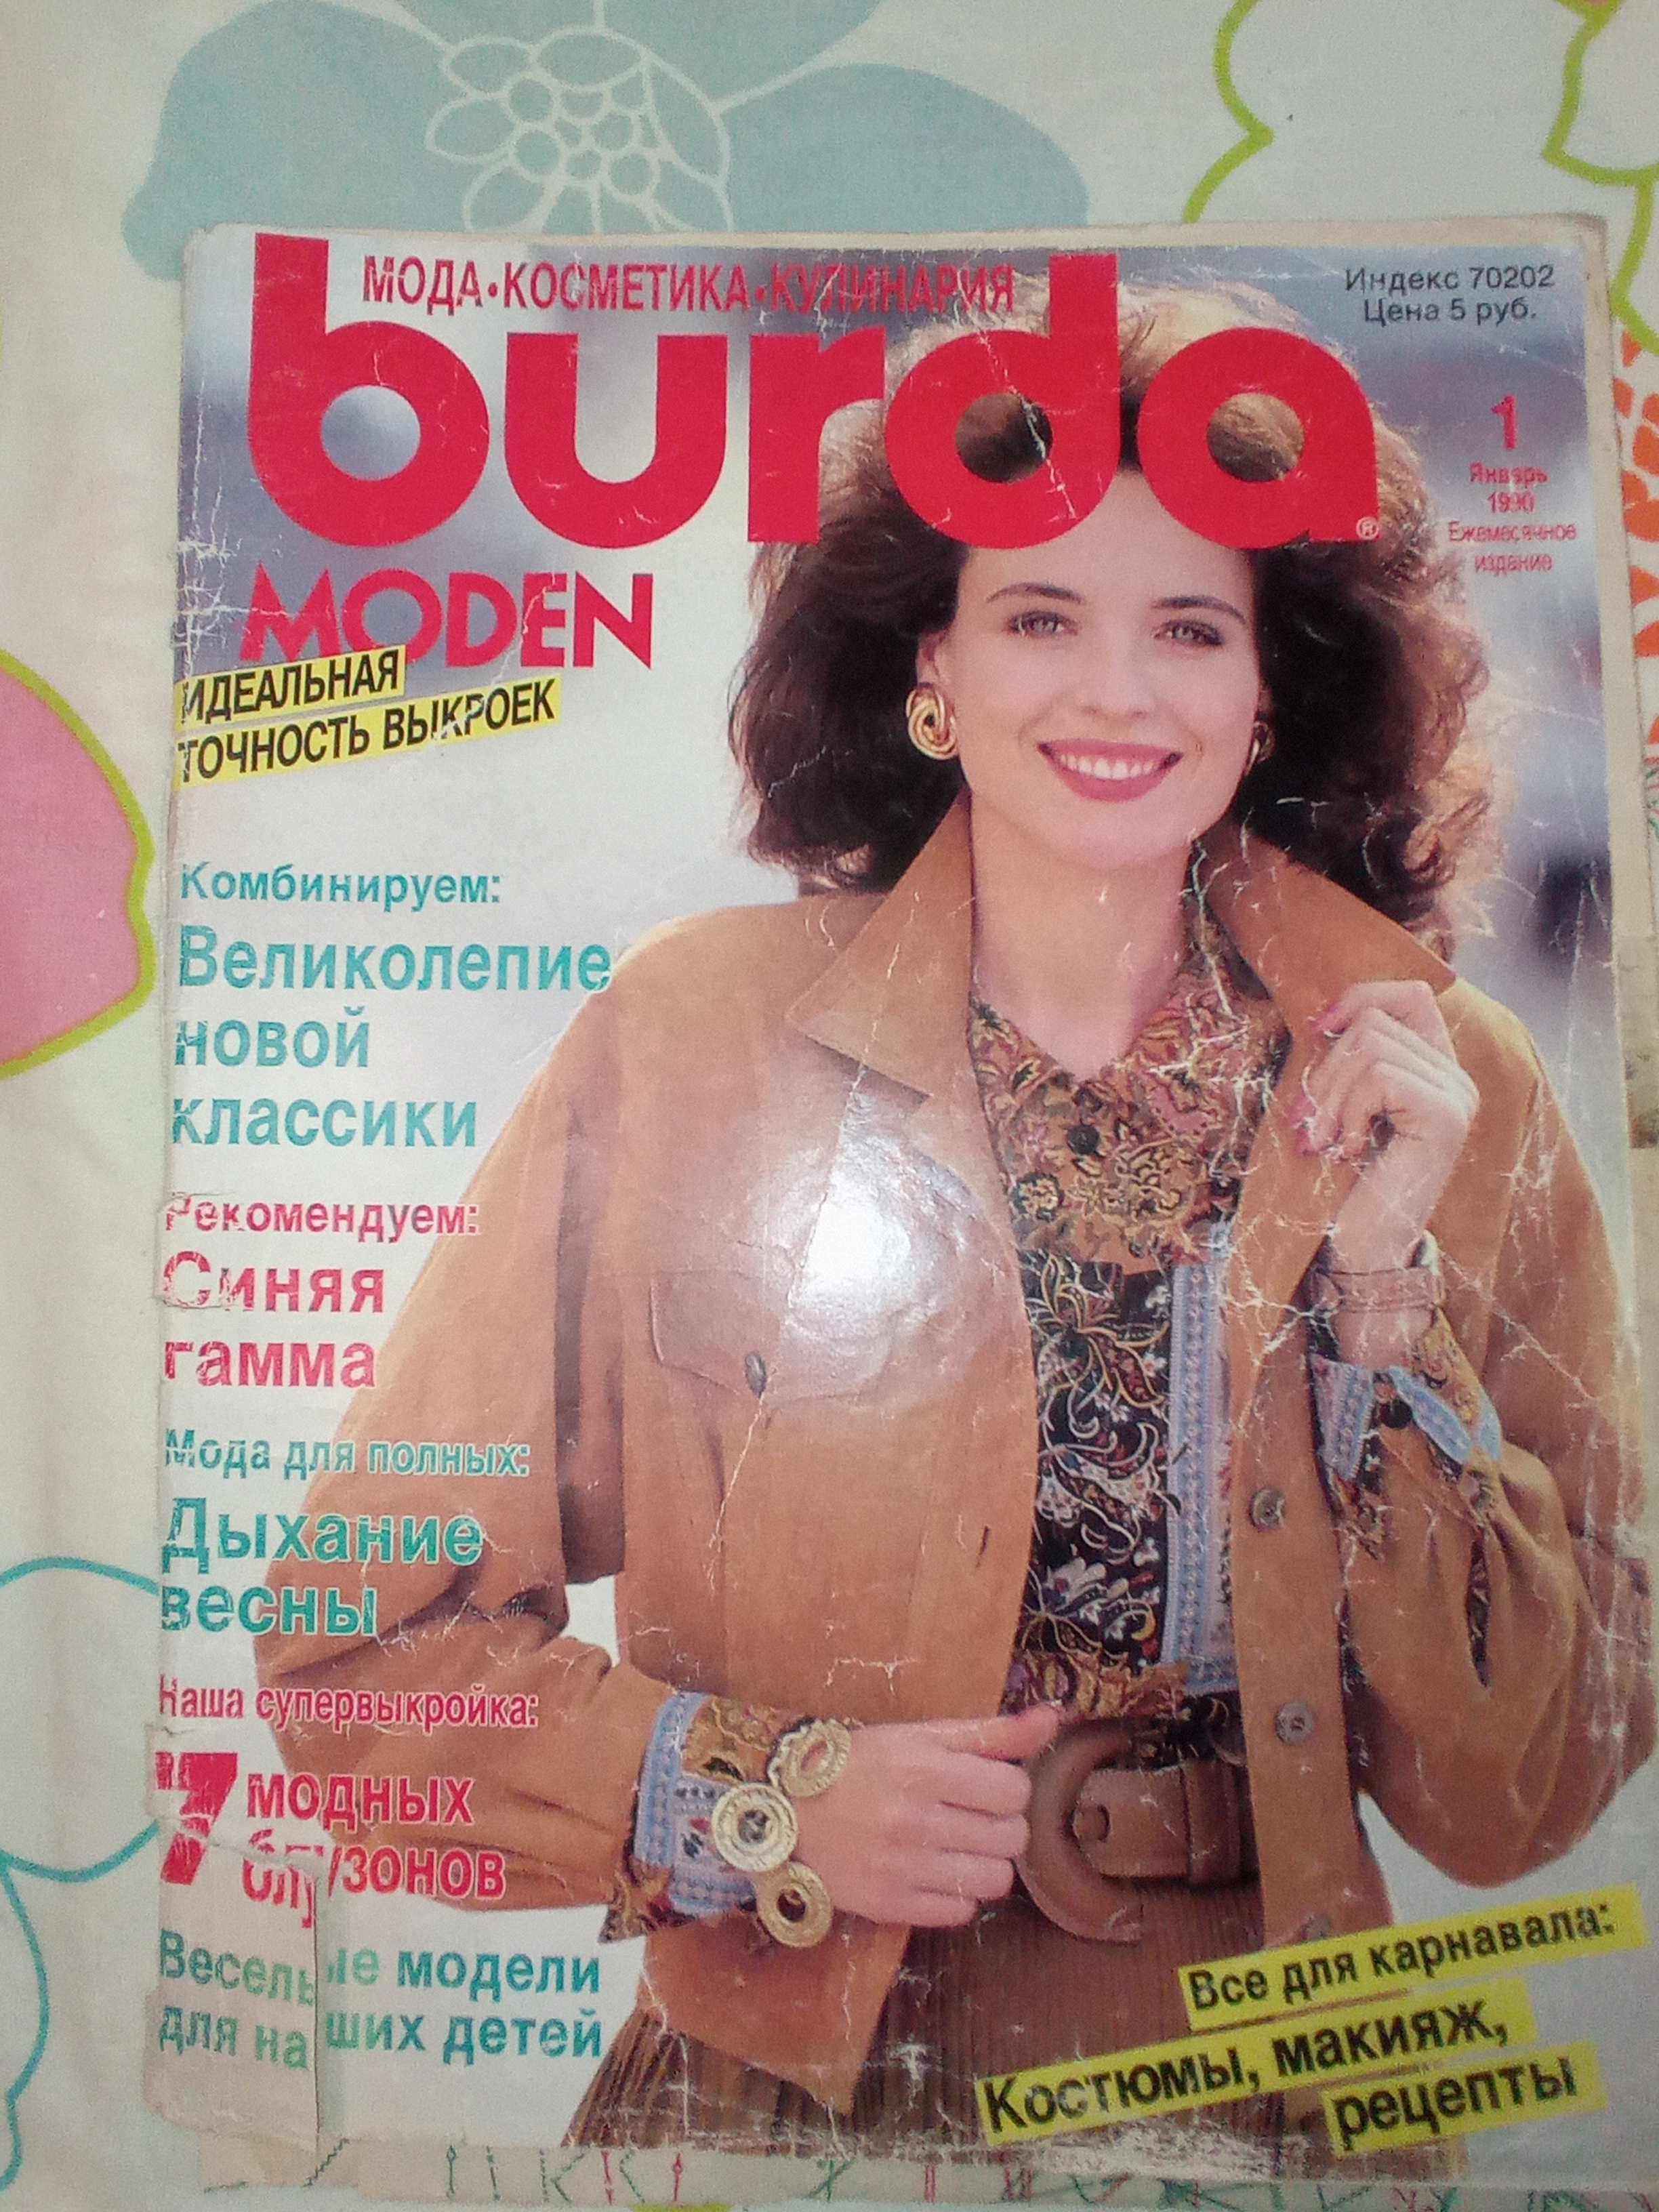 Выкройки из журнала "Бурда моден" 1990 года выпуска